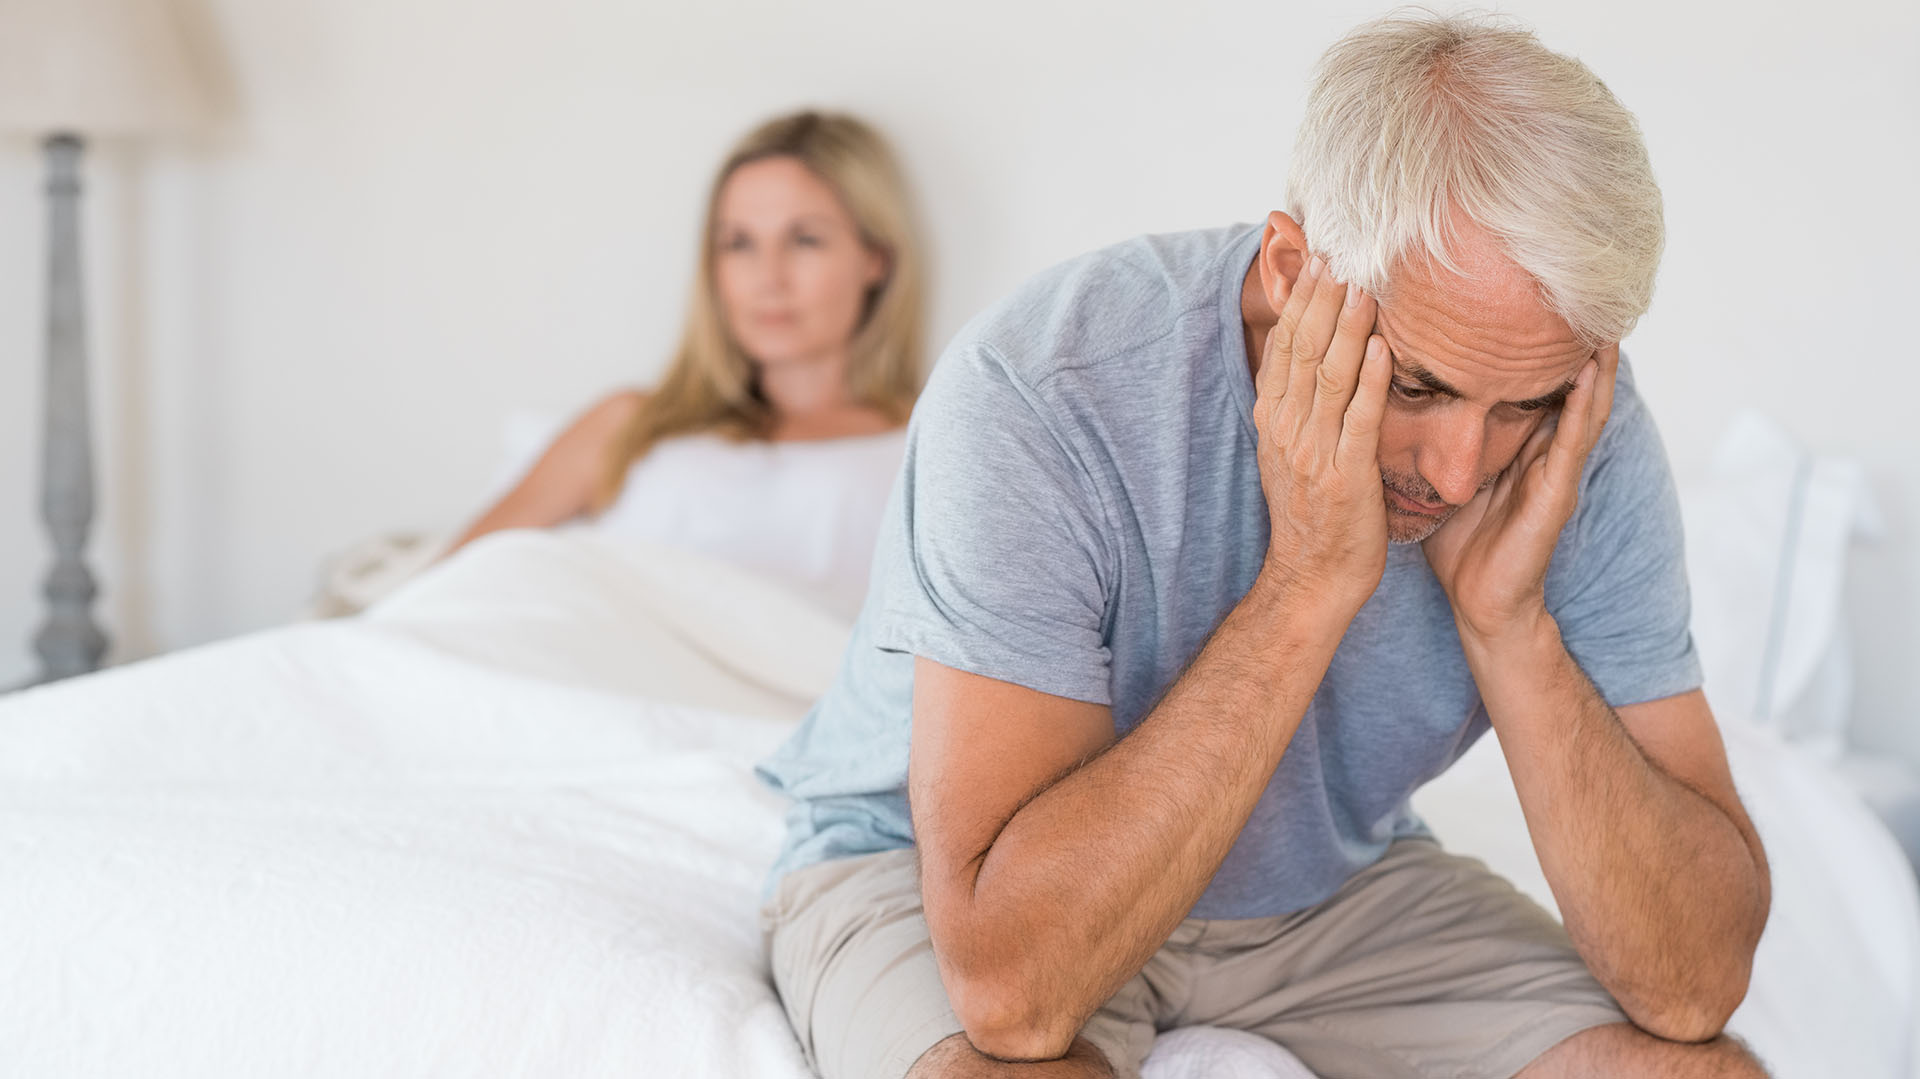 Los efectos secundarios sexuales del cáncer de próstata pueden incluir: dificultad para lograr y/o mantener una erección, dolor durante las relaciones sexuales o eyaculación precoz (Getty Images)